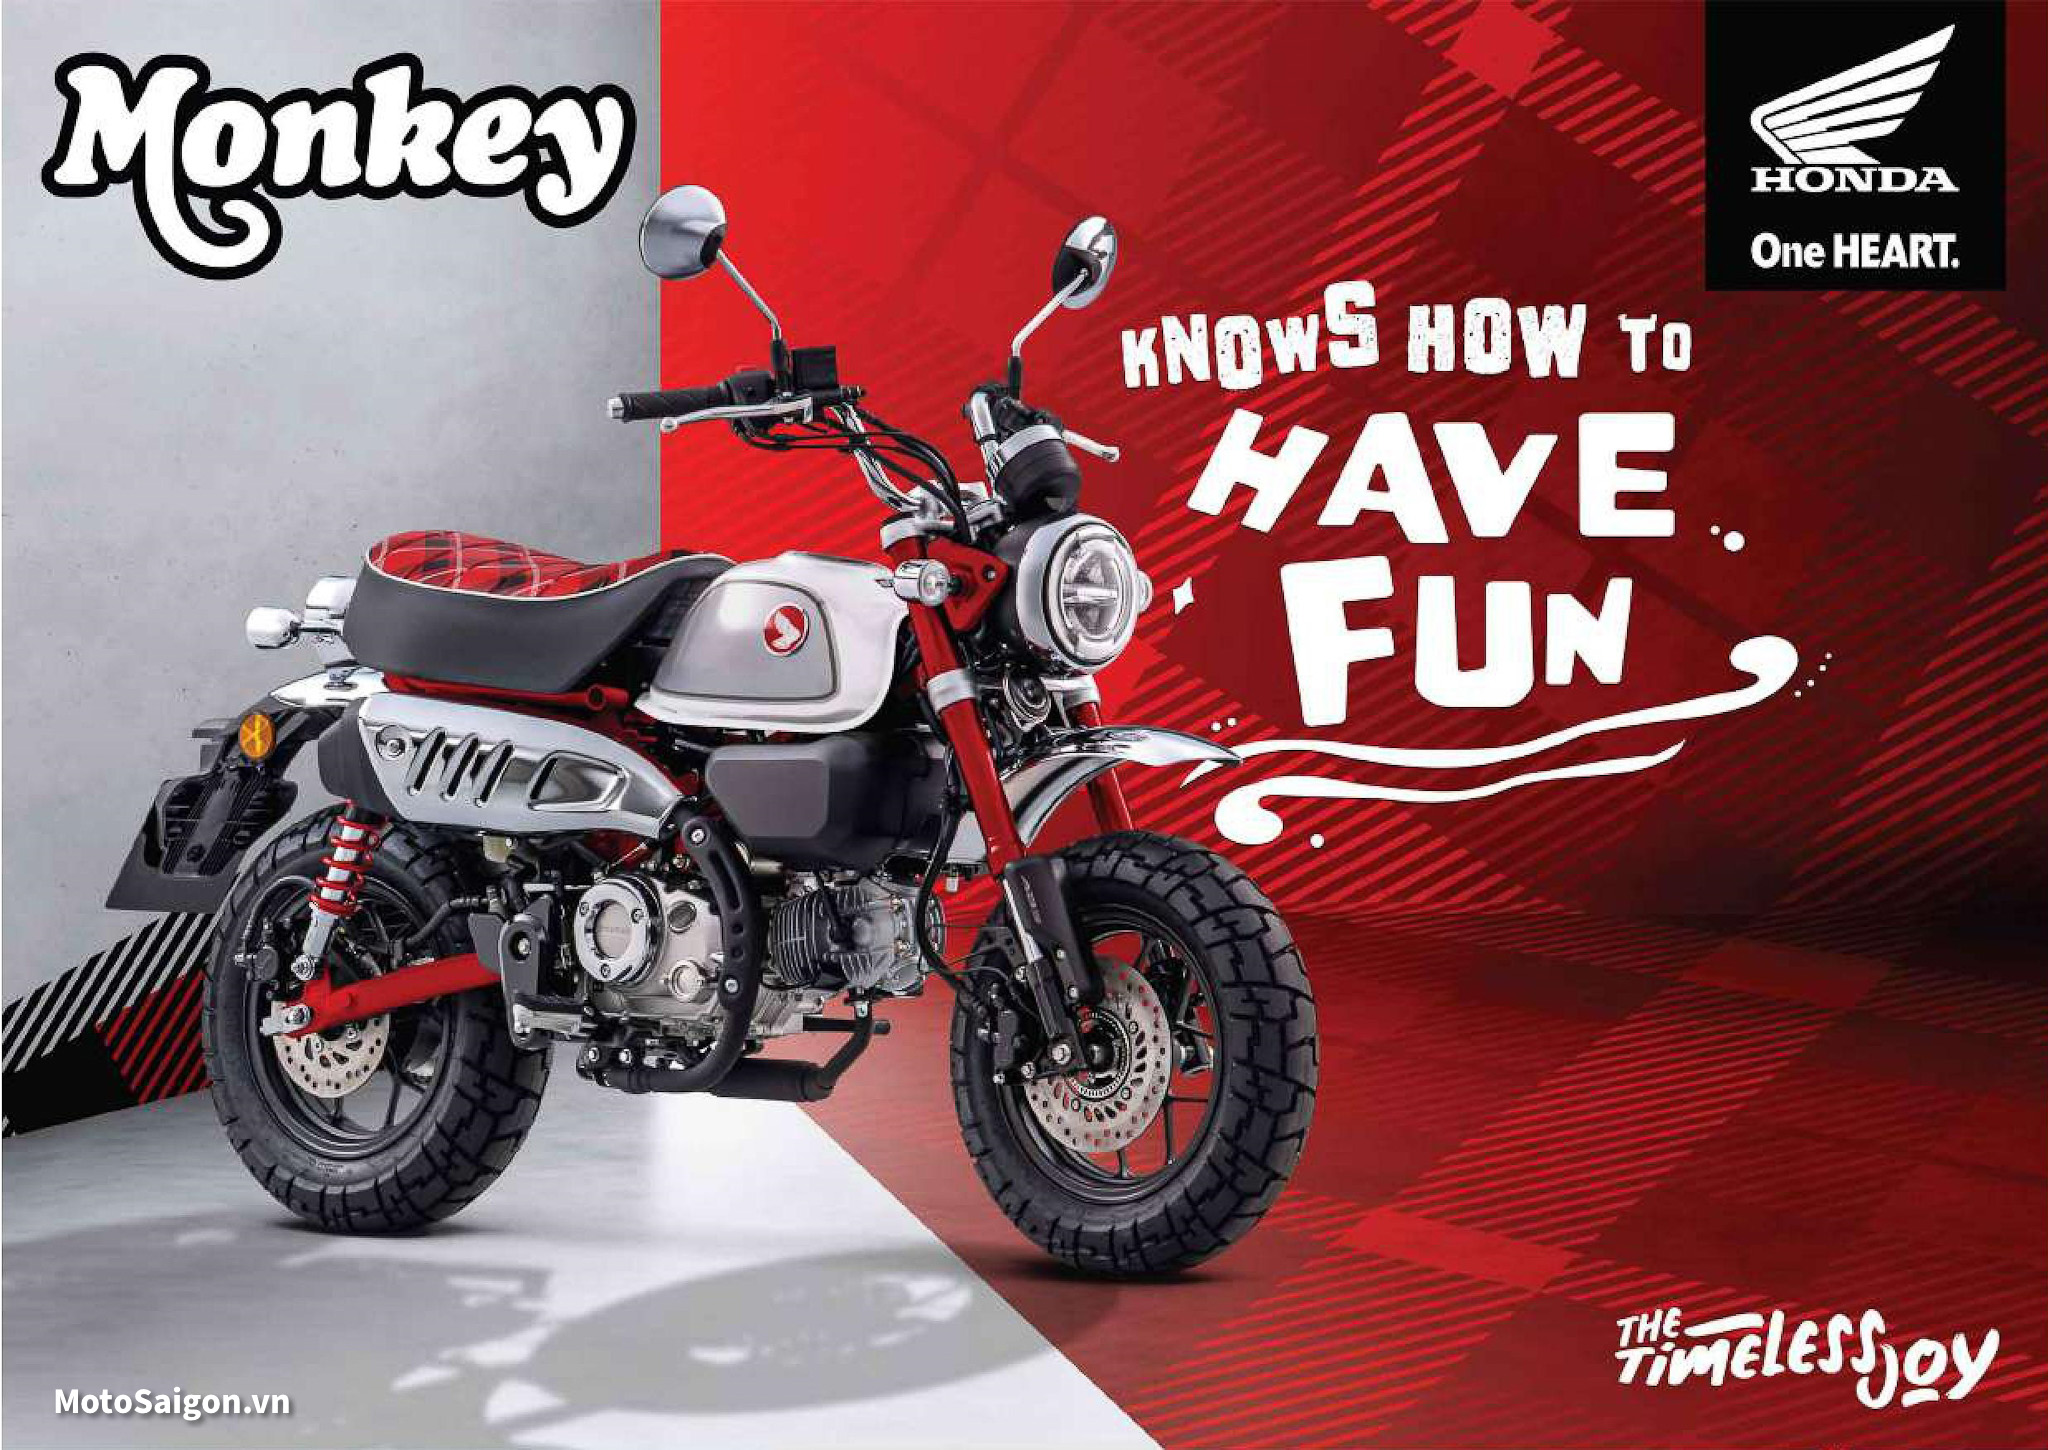 Xe khỉ Honda Monkey 125 khác biệt với dàn đồ chơi ngang ngửa chiếc SH125i